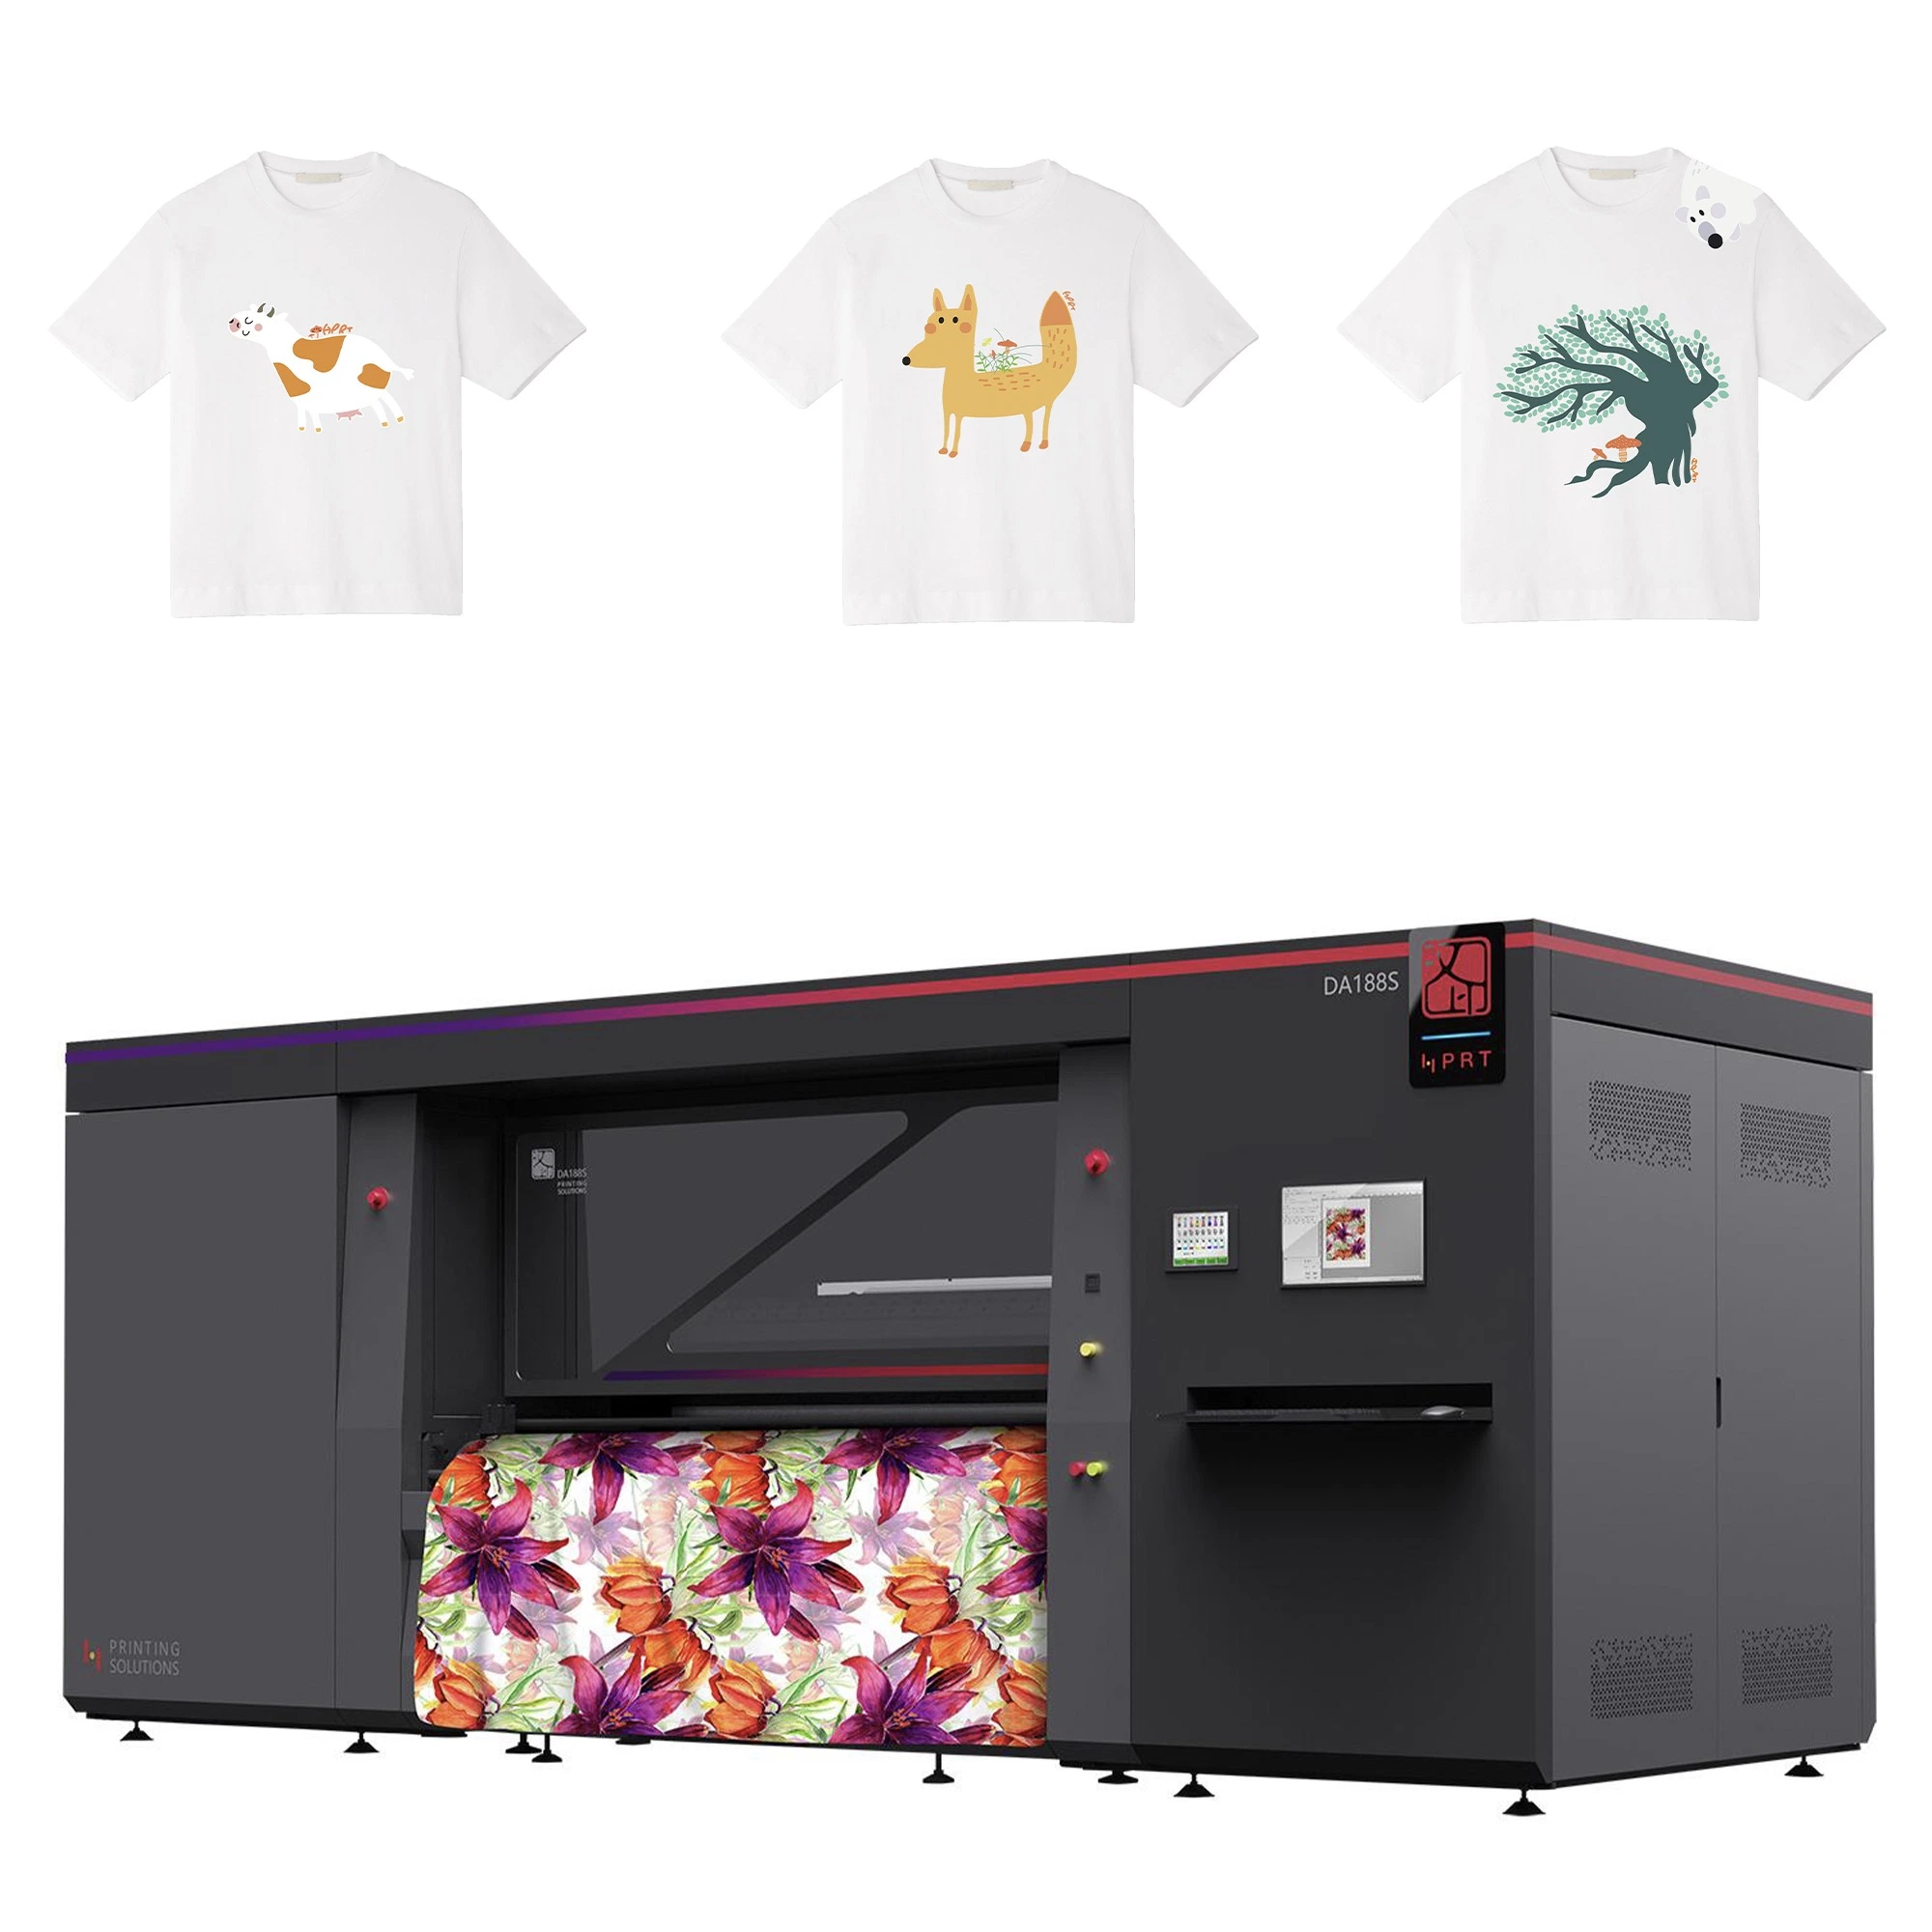 Cabeça de impressão Kyocera/16 32 cores/HPRT Industrial Roll to Roll Digital Máquina de impressão de camisas têxteis para impressoras a jato de tinta